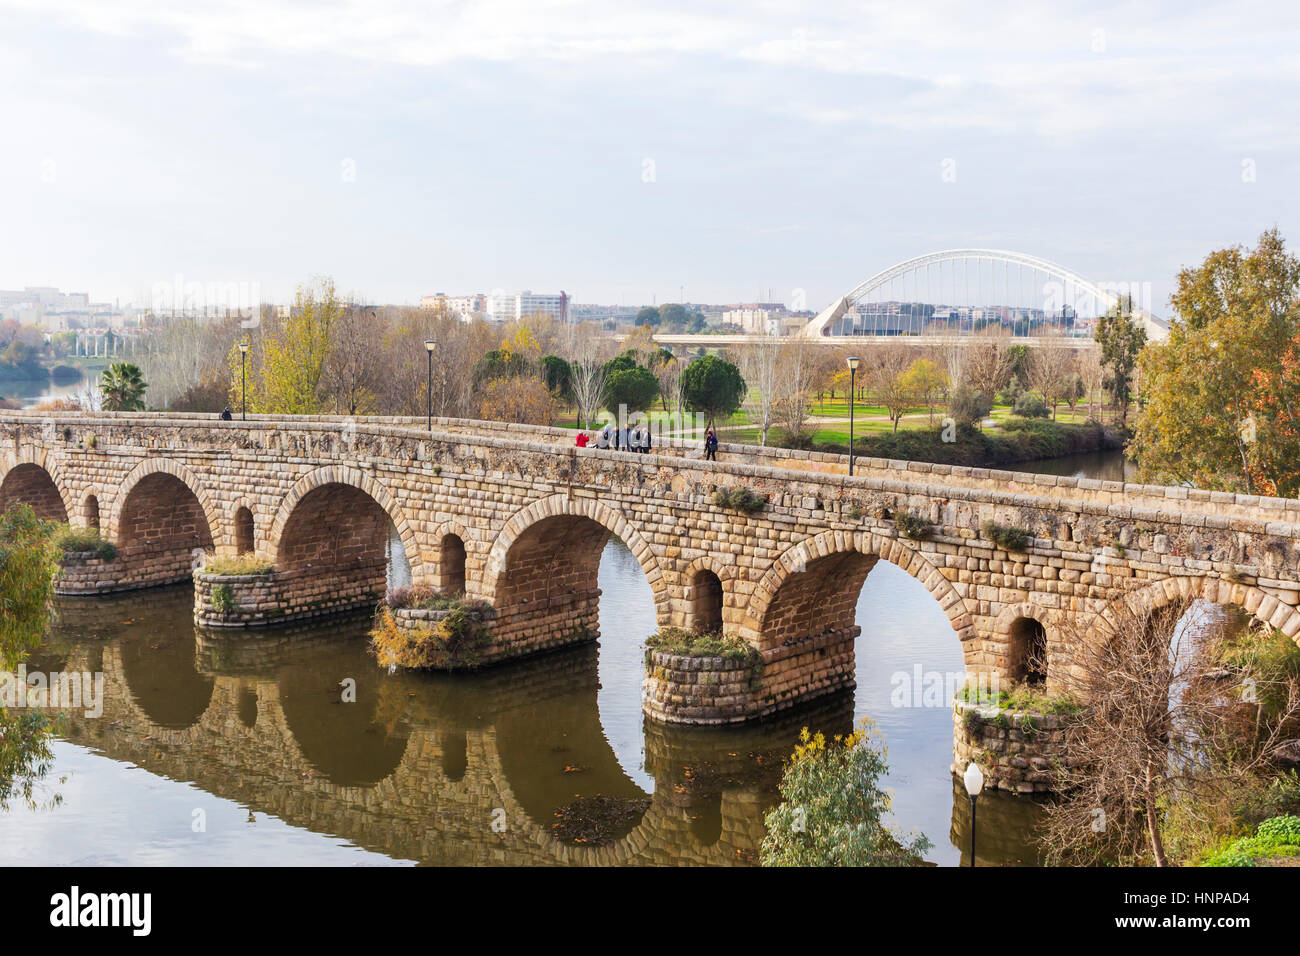 Merida, Provinz Badajoz, Extremadura, Spanien. Die Puente Romano oder römische Brücke über den Fluss Guadiana. Stockfoto